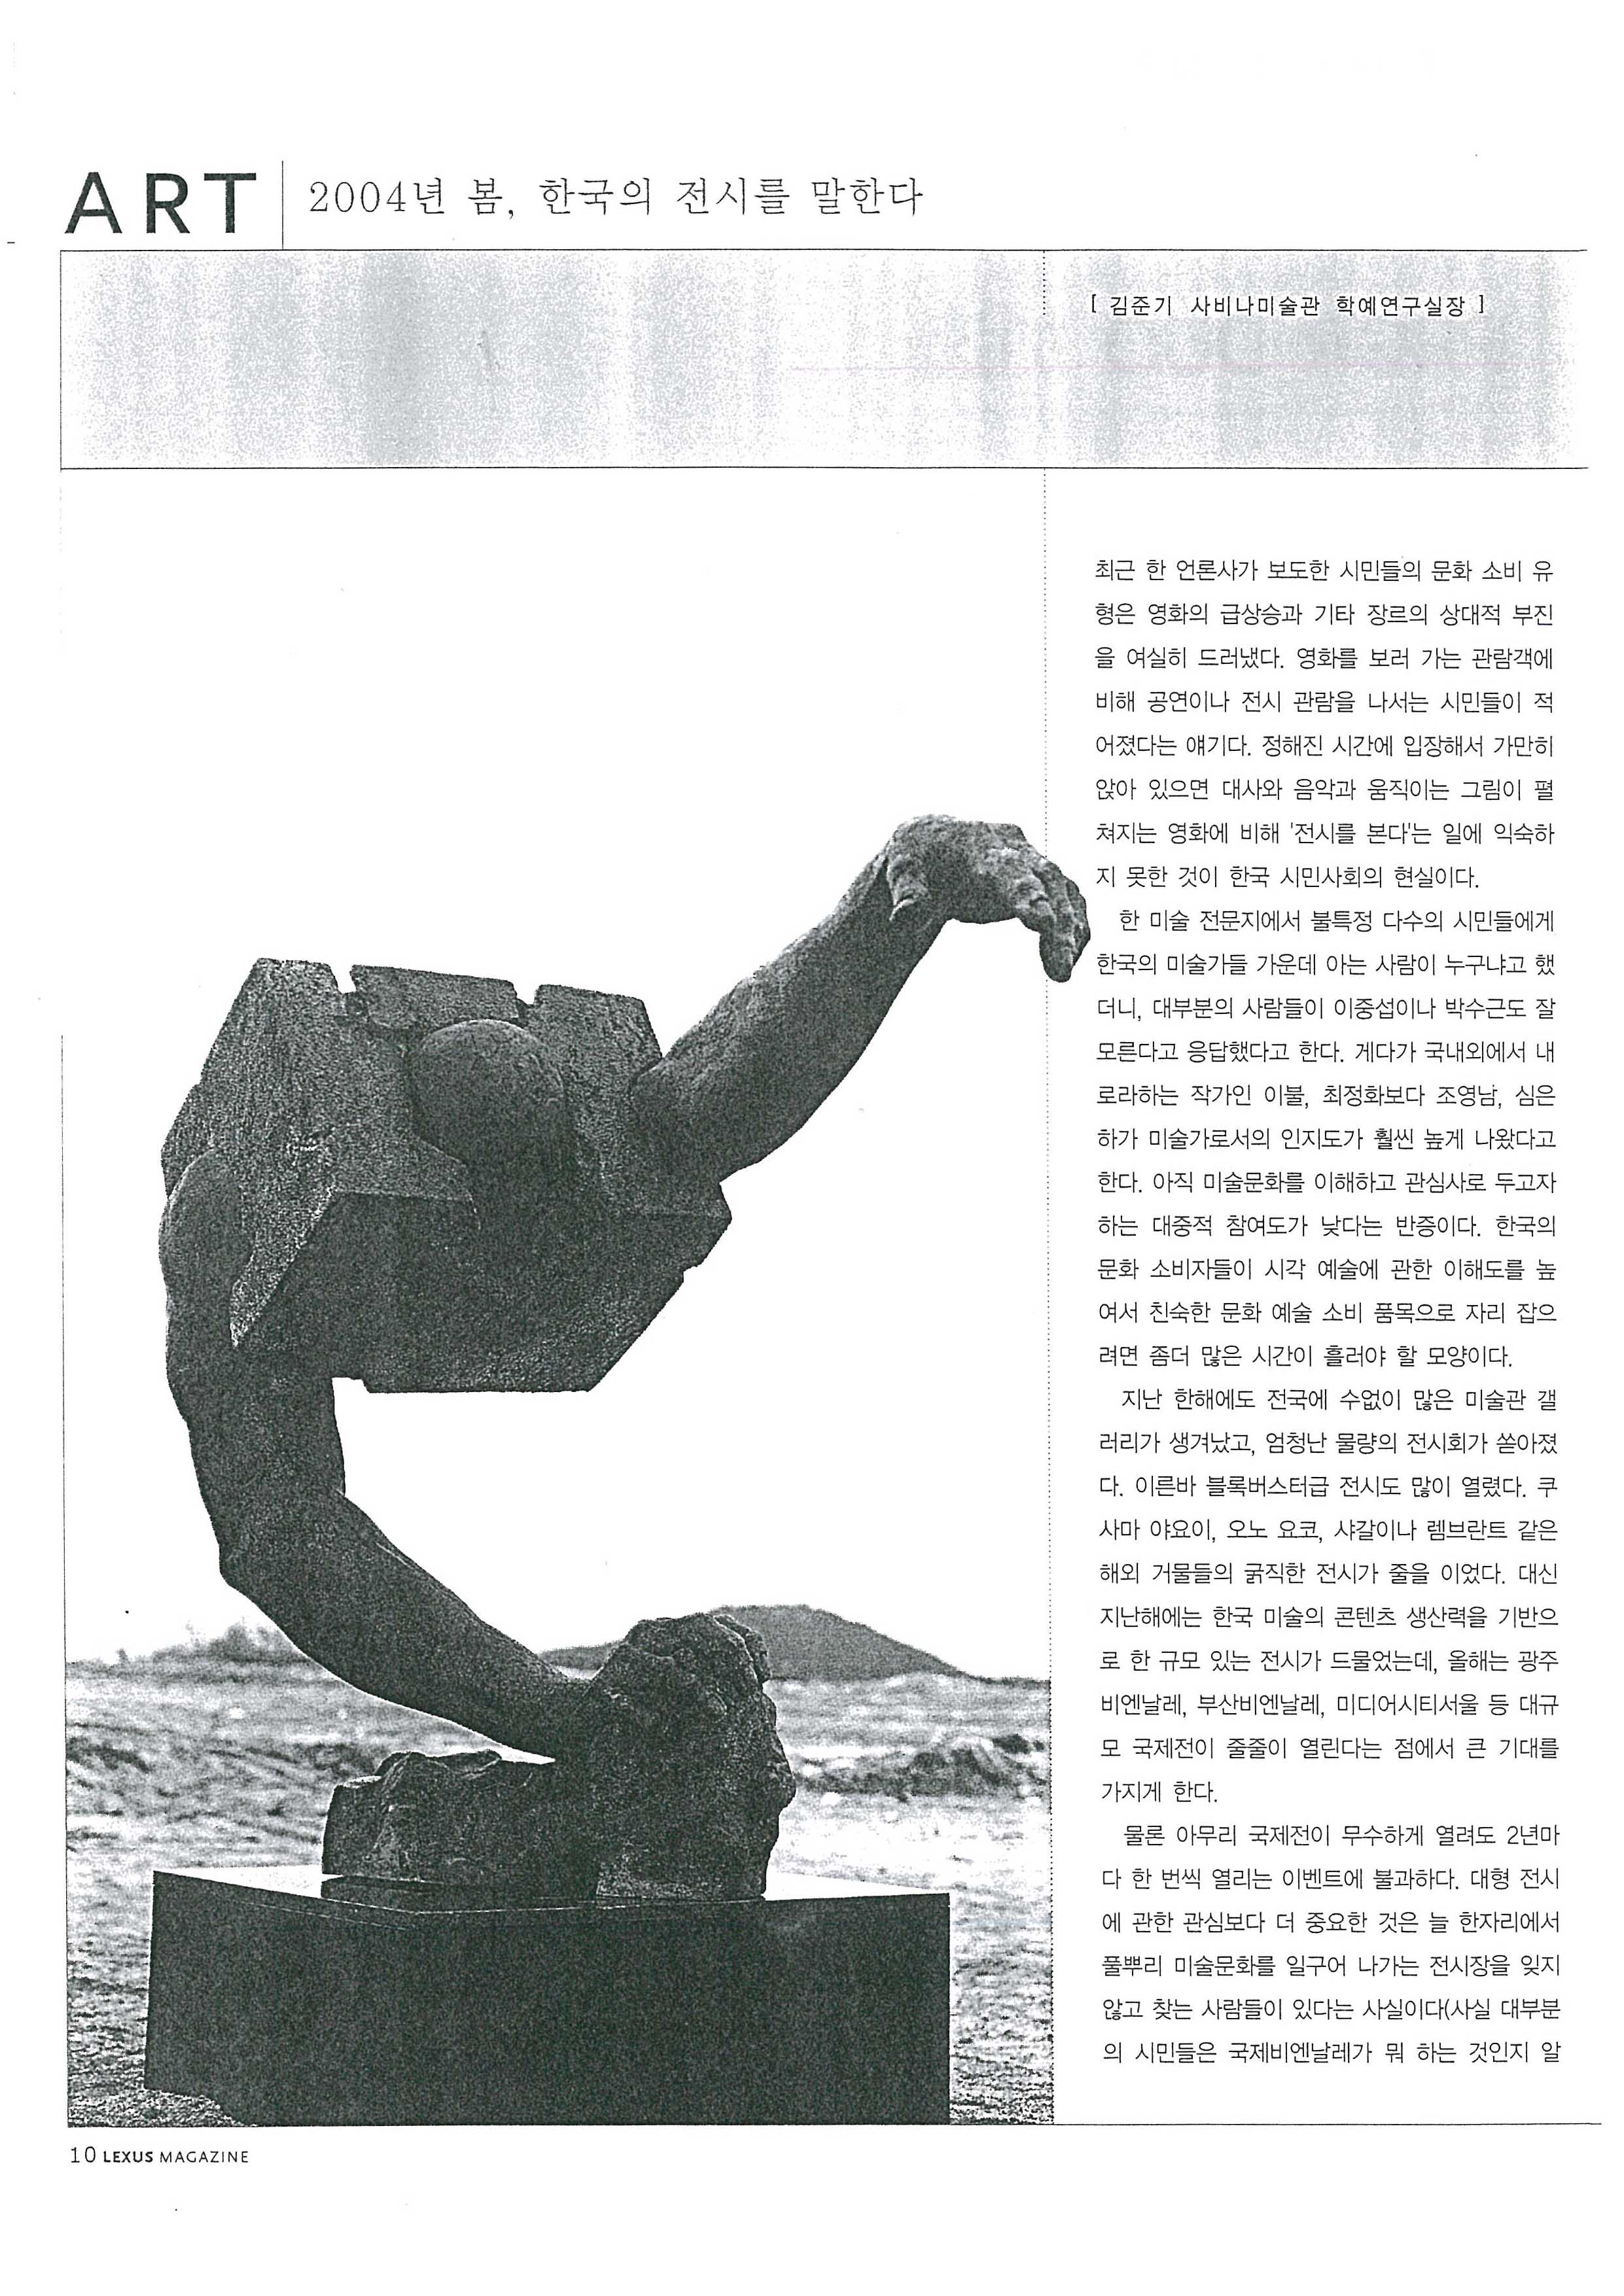 「2004년 봄, 한국의 전시를 말한다」, 『LEXUS』